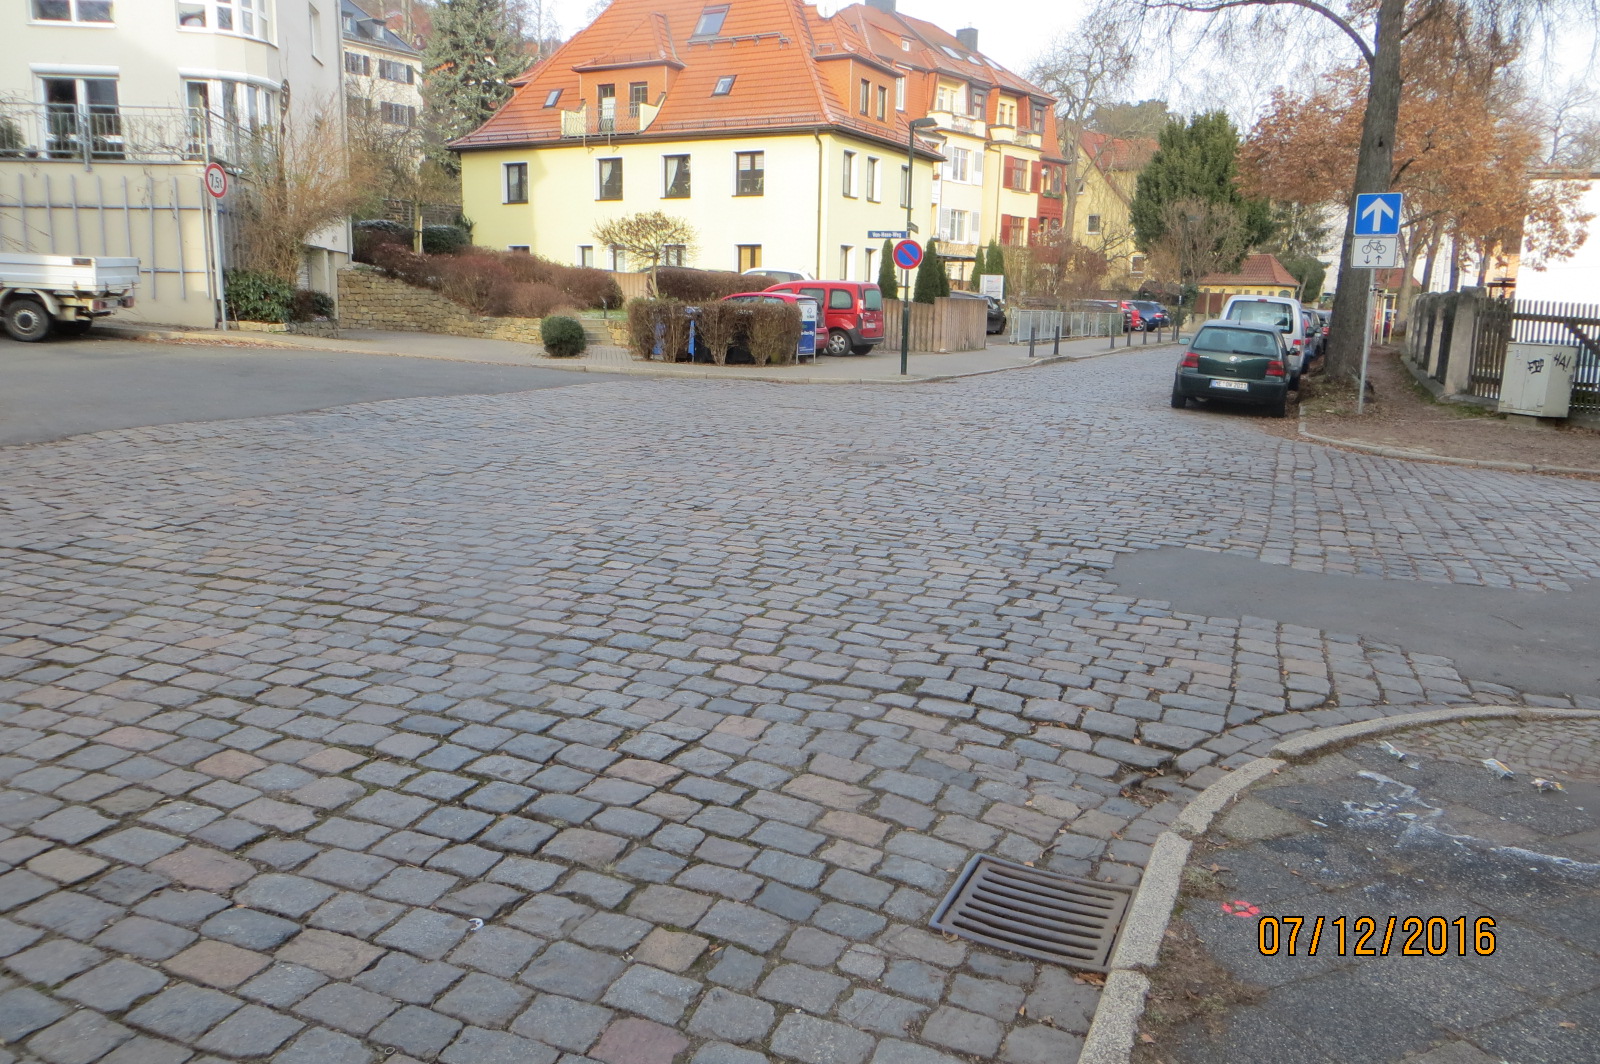 Blick in die Thomas-Mann-Straße, Kreuzung. Die Straße ist geplastert, rechts parken Autos.